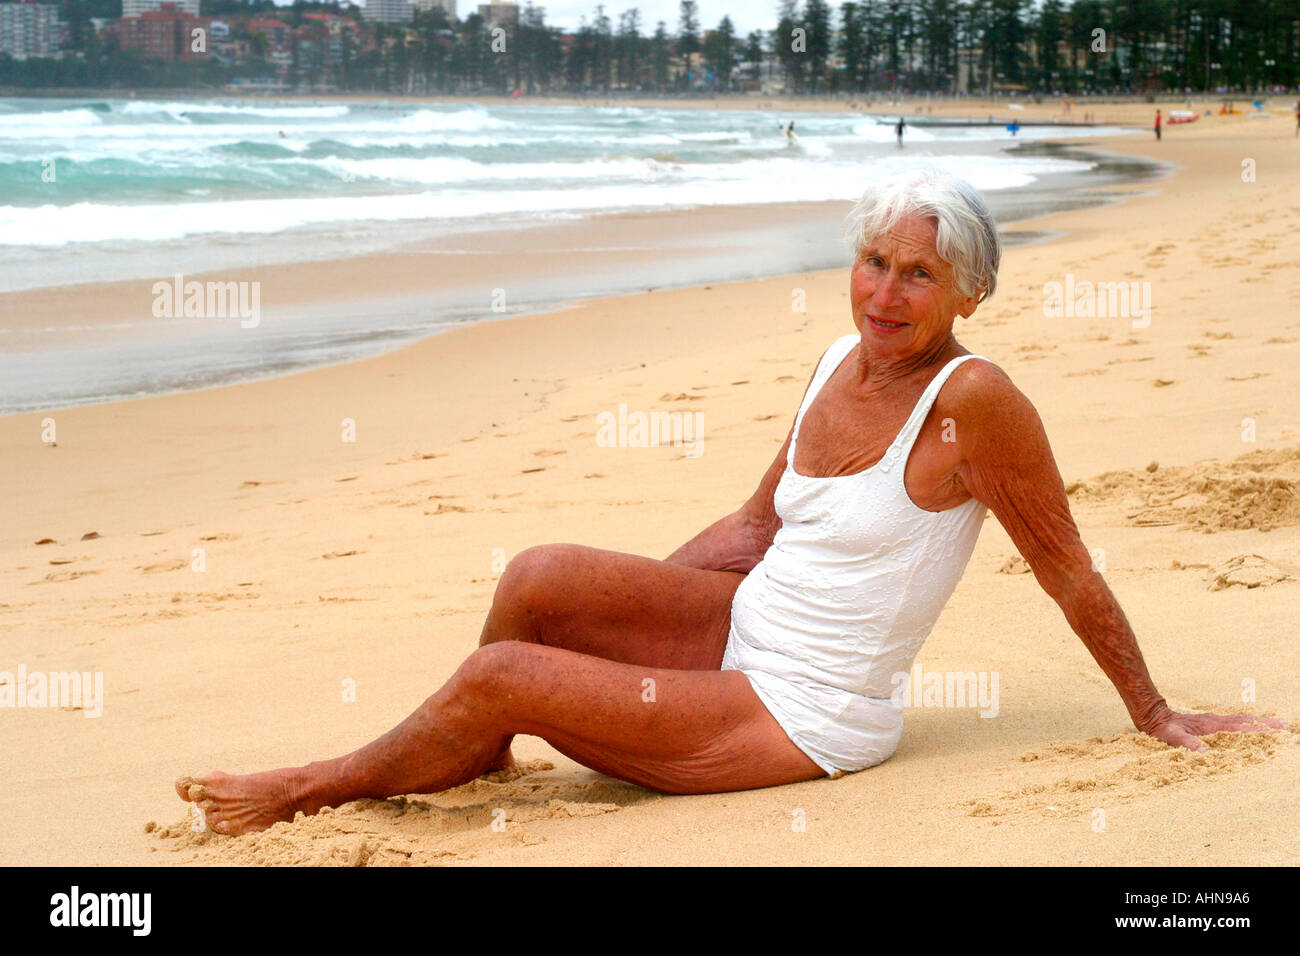 An old beach sunbather at Manly beach Sydney Australia Stock Photo